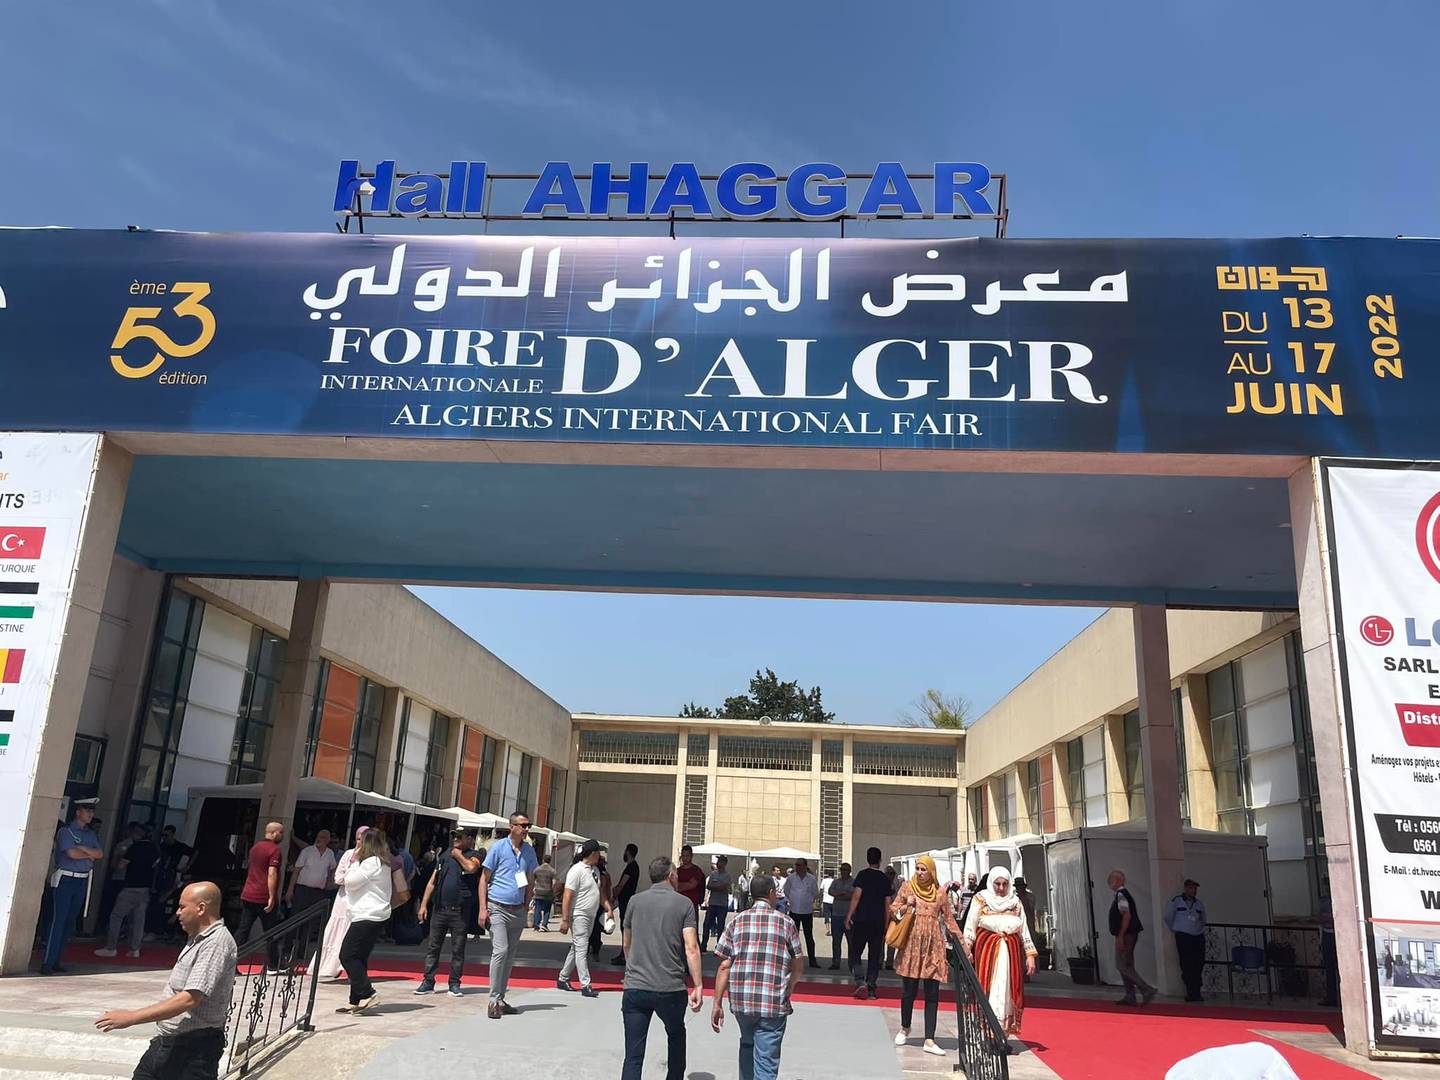 La Feria Internacional de Argel se desarrolló del 13 al 17 de junio.